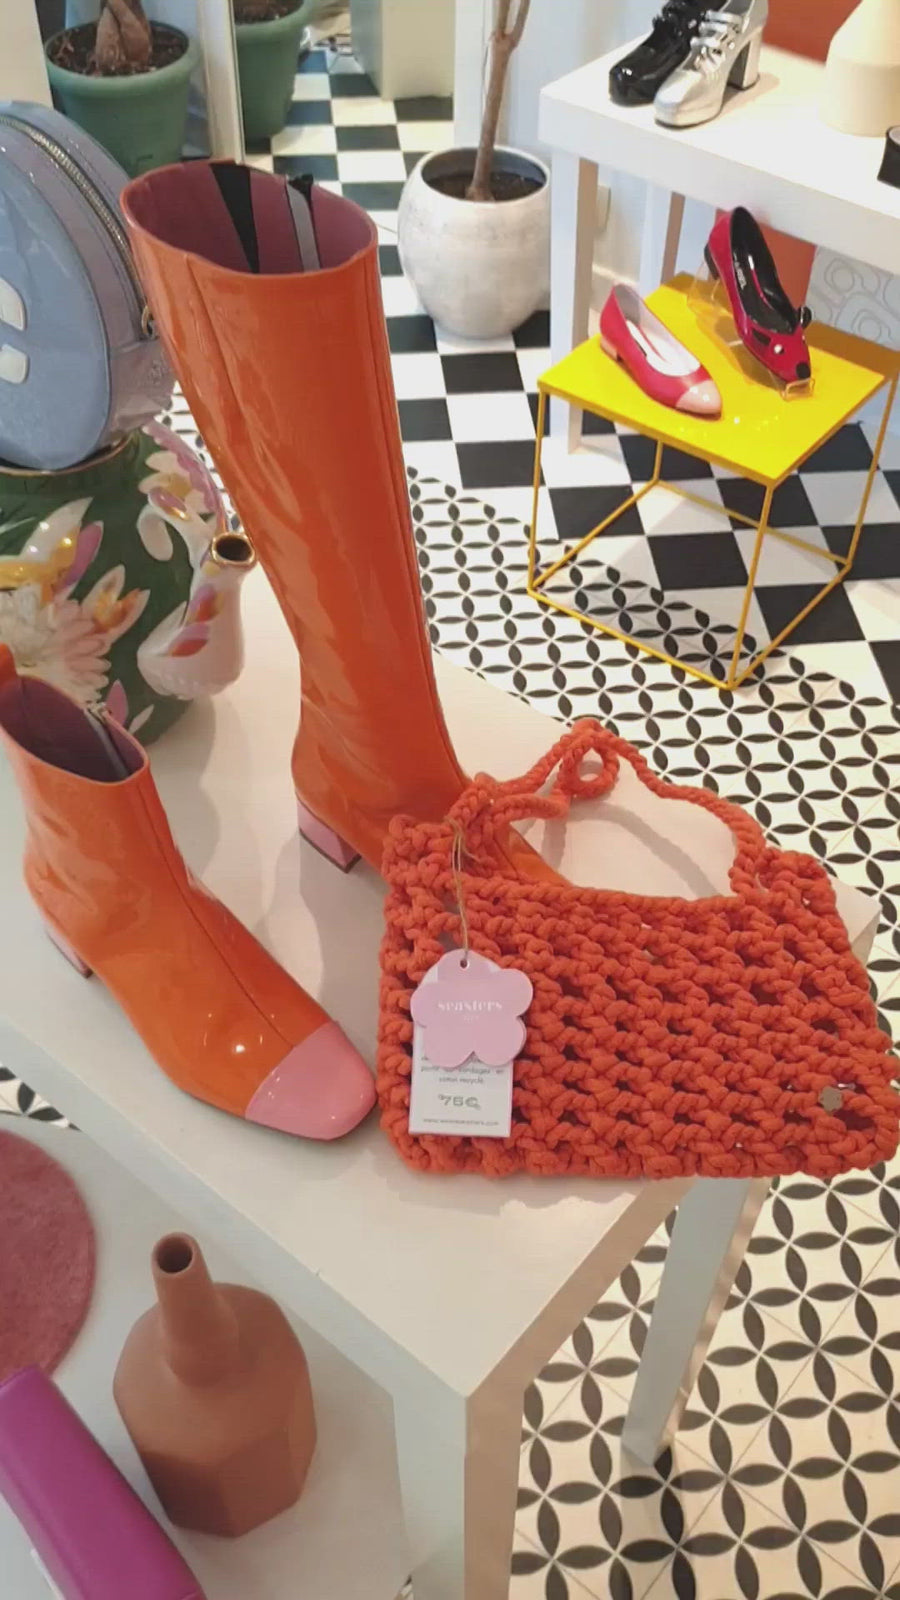 MILEY Crochet Handbag : Tangerine